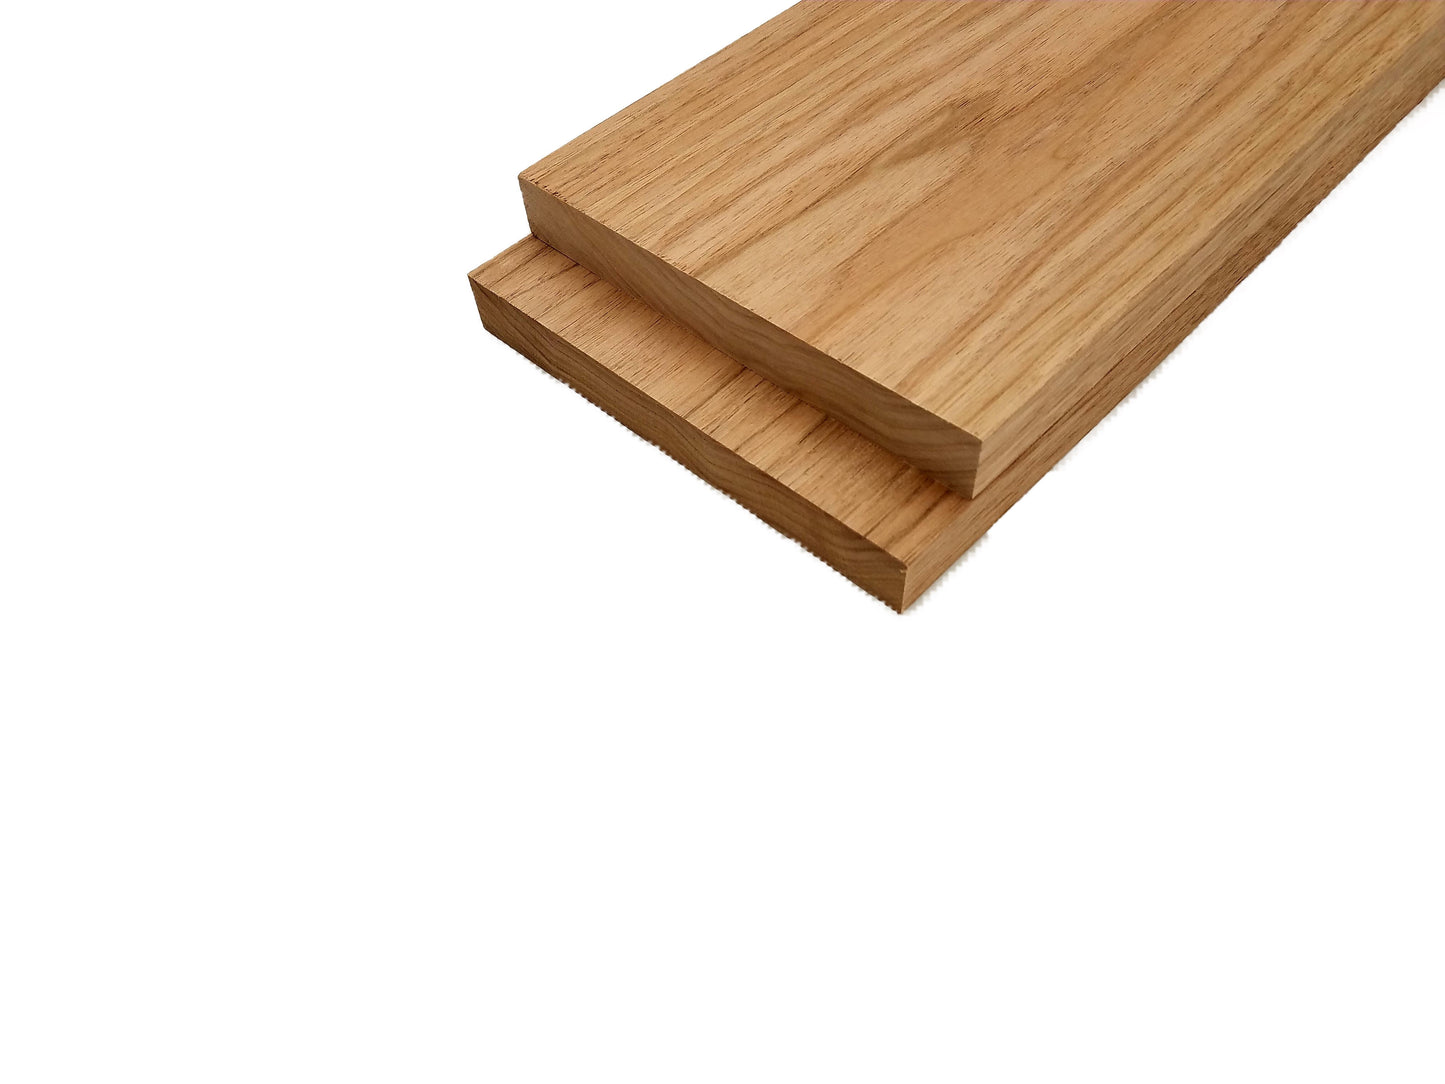 Butternut Lumber Board - 3/4" x 6" (2 Pcs)